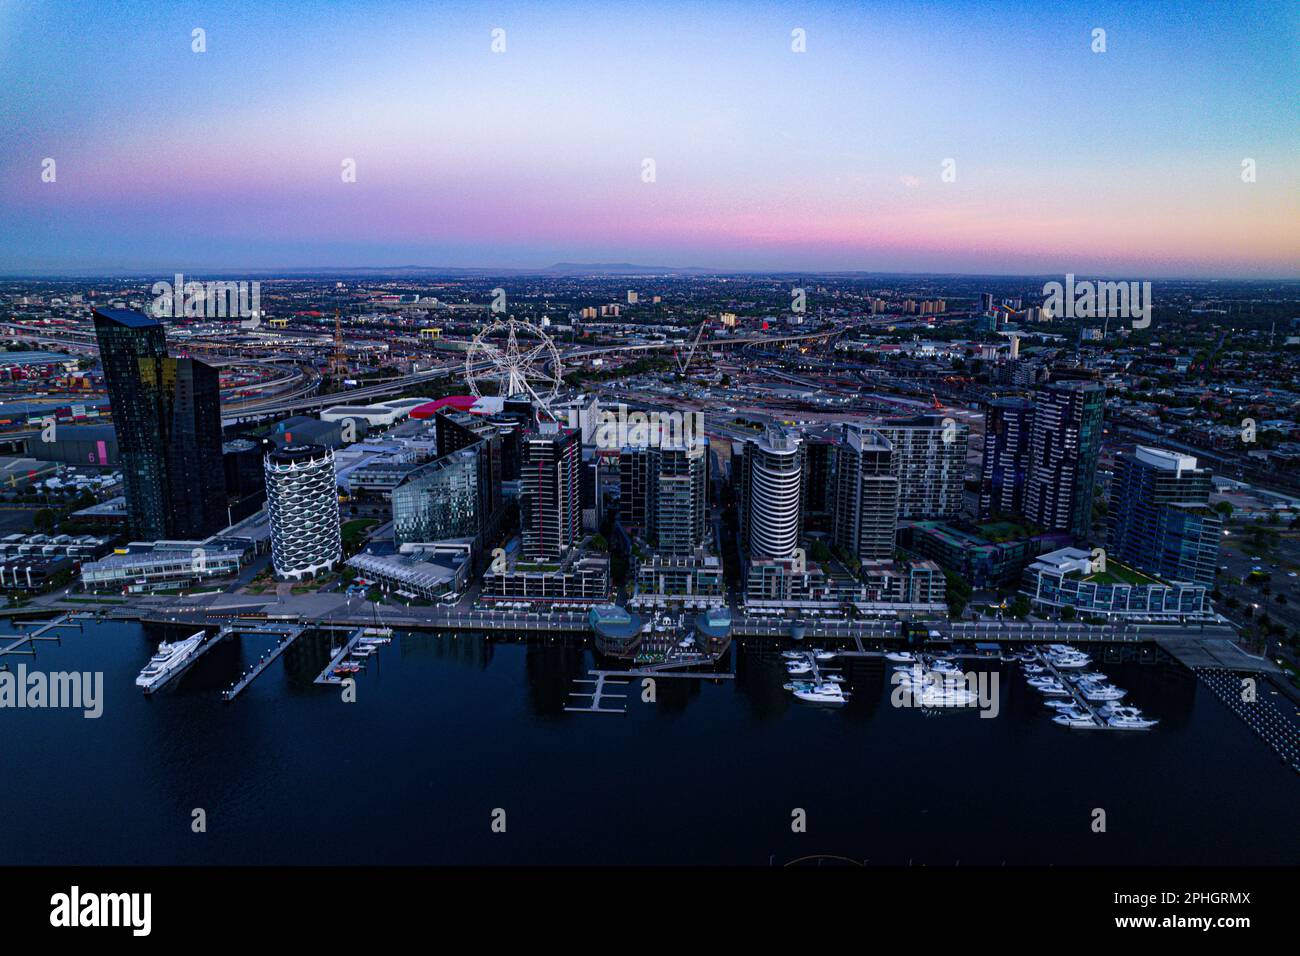 Ein Luftblick auf Apartmentgebäude entlang der Uferpromenade mit dem Riesenrad in Melbourne. Stockfoto